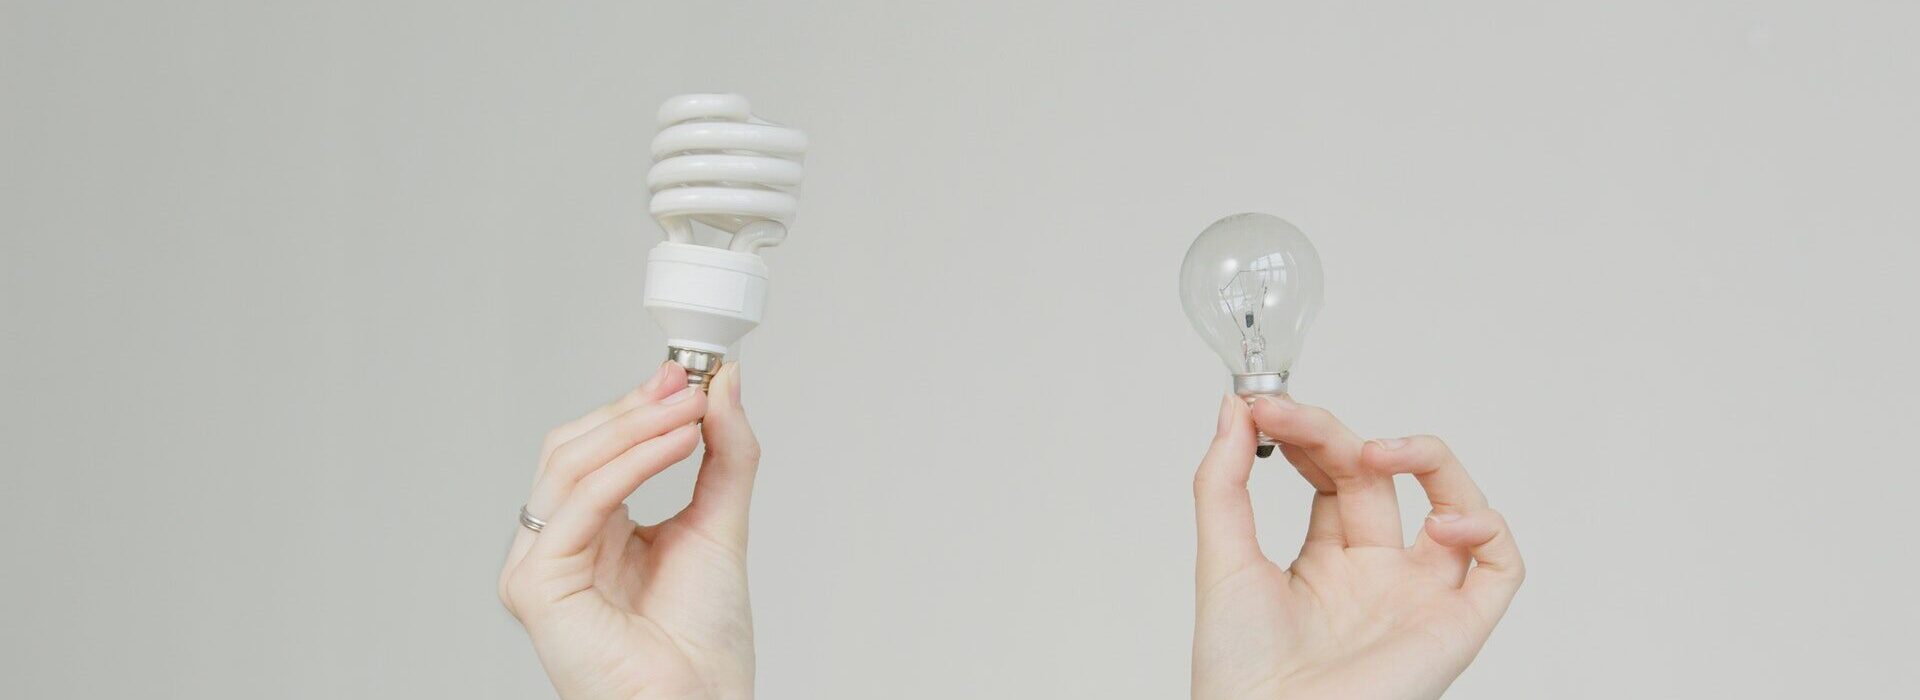 lampada e energia - Principais diferenças entre 110V e 220V: Entenda de uma vez por todas a diferença